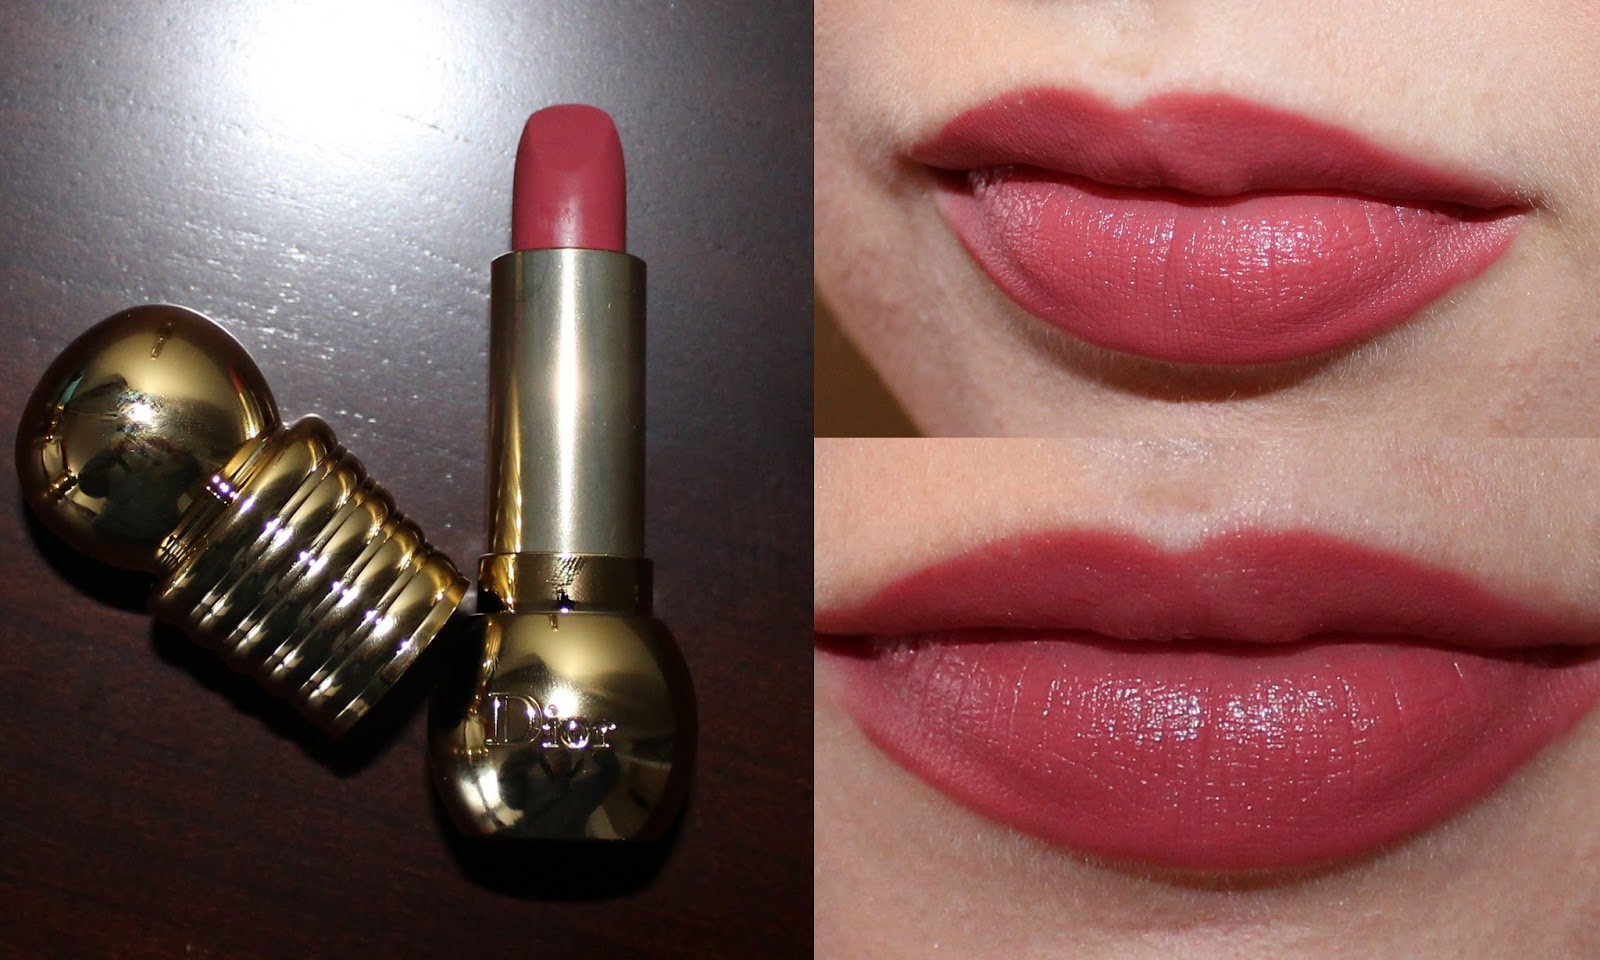 diorella lipstick